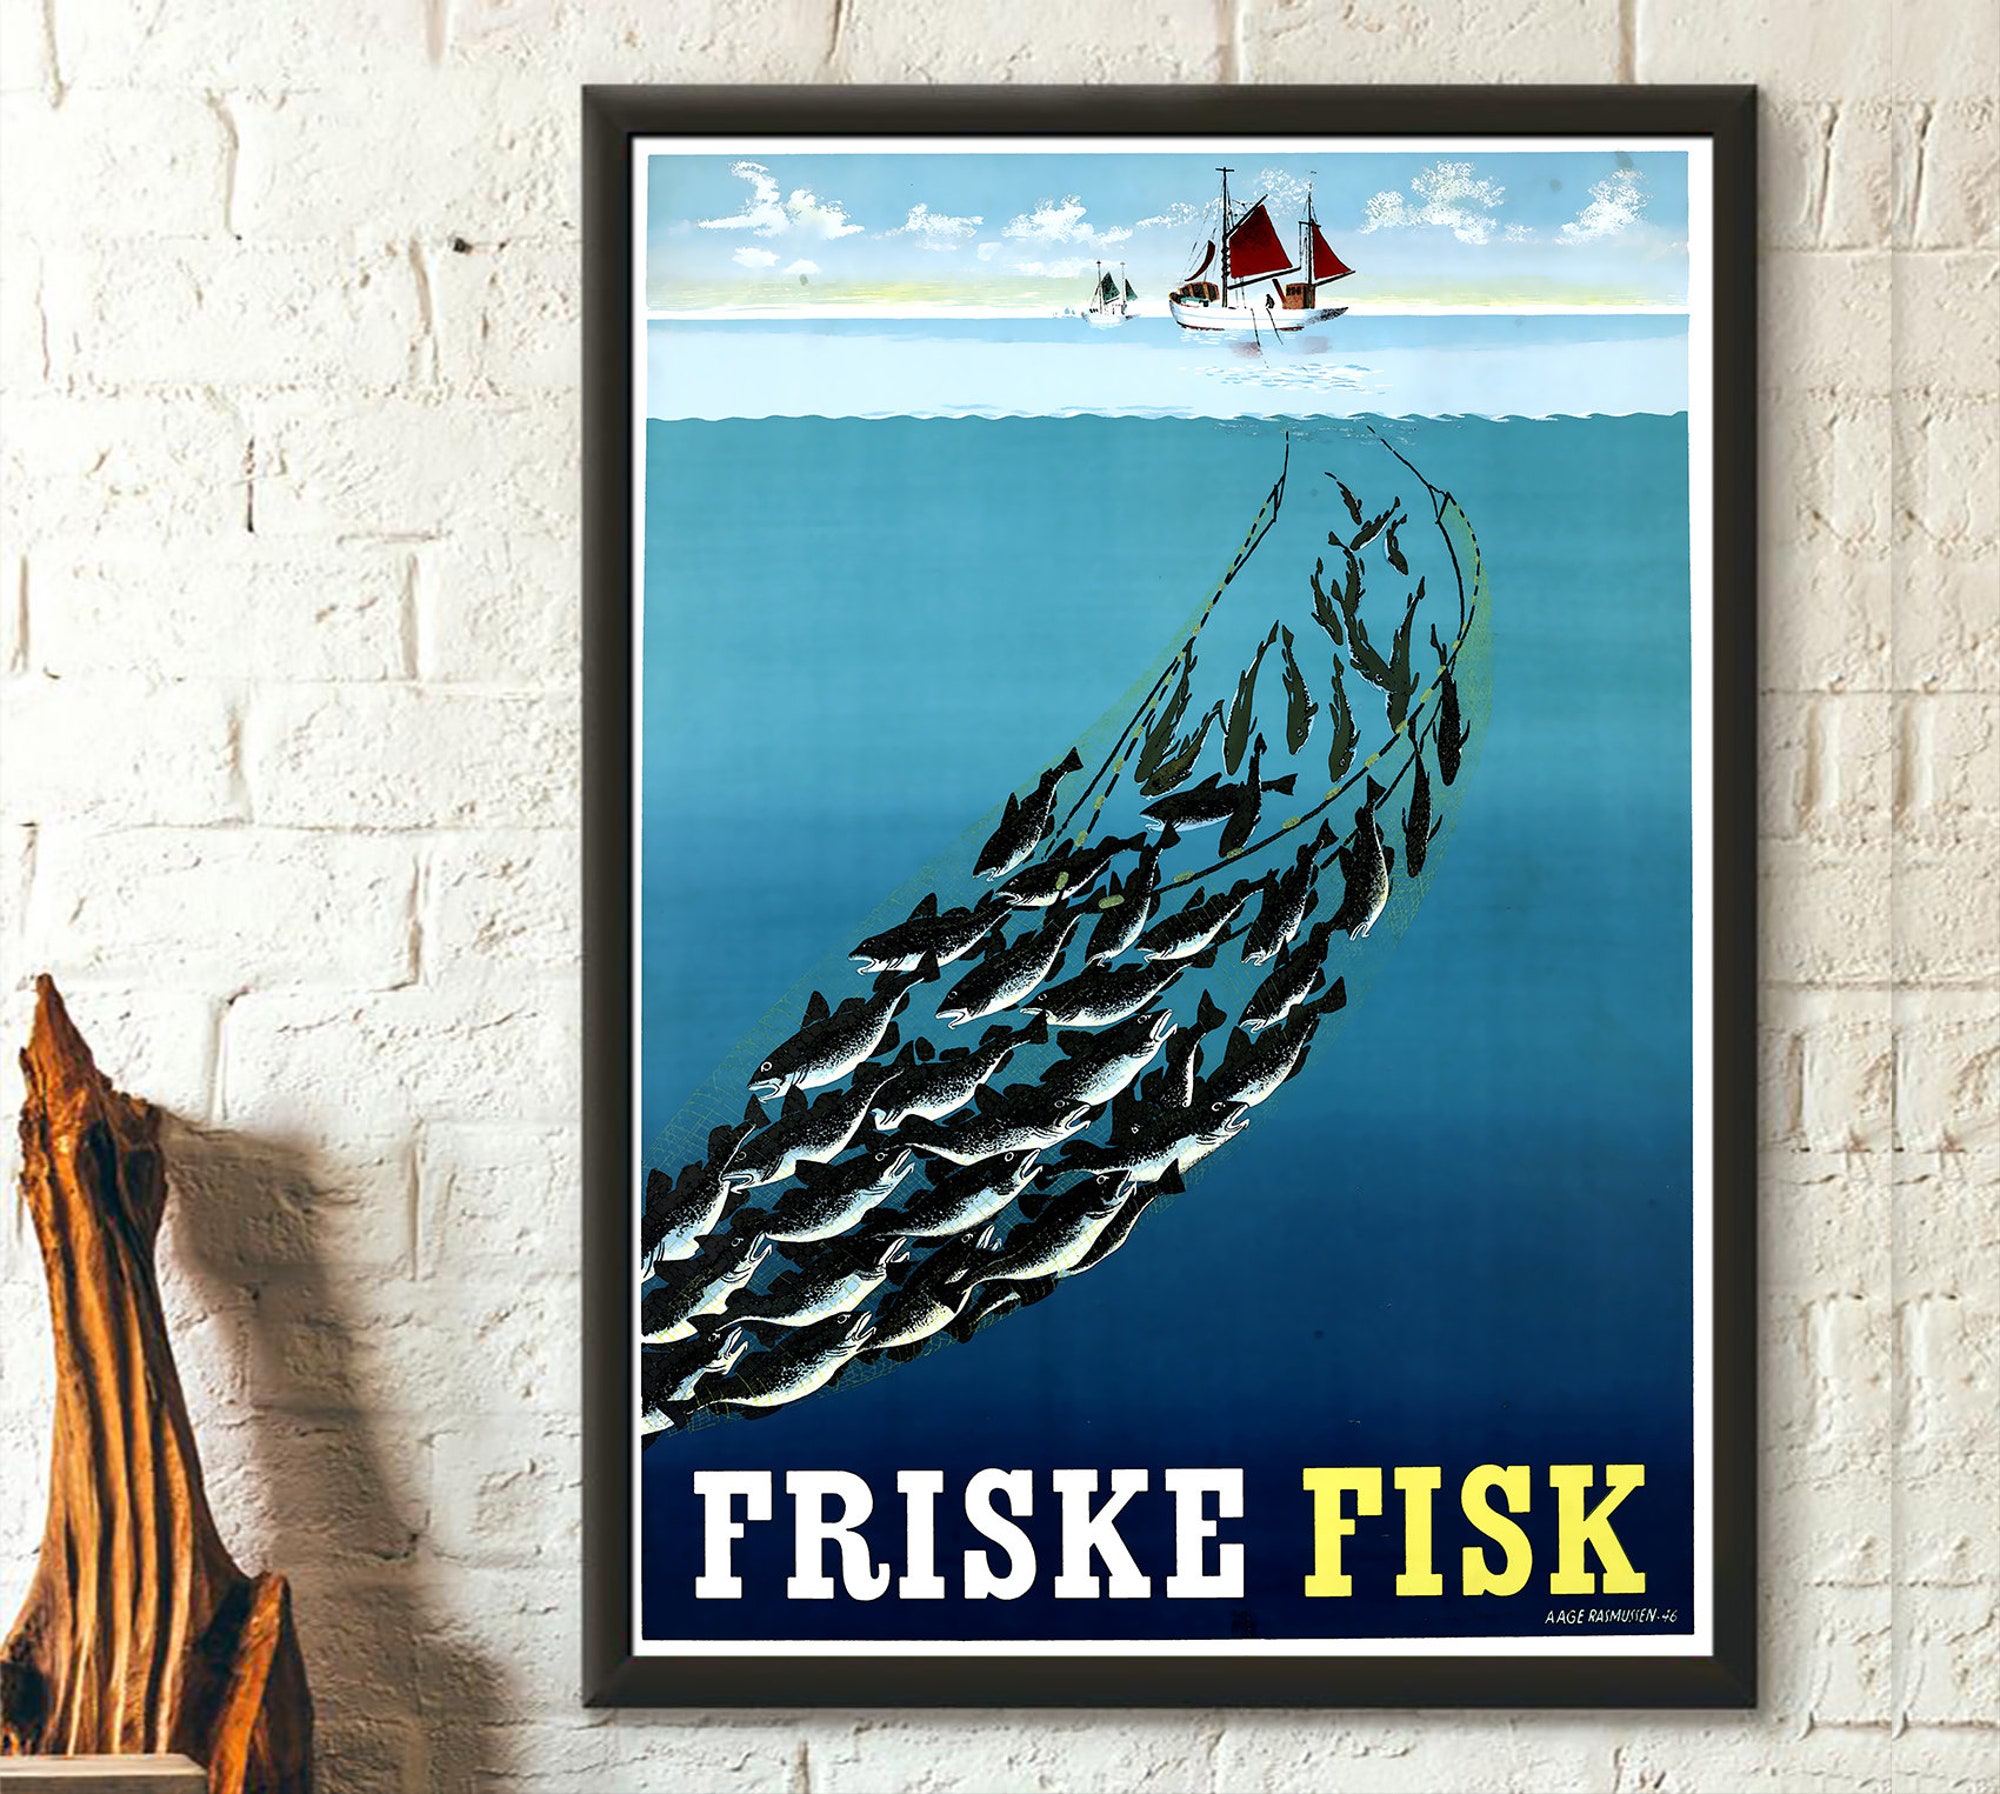 Discover Friske Fisk - Vintage Food Poster Fishing Poster Kitchen Wall Art Kitchen Decor